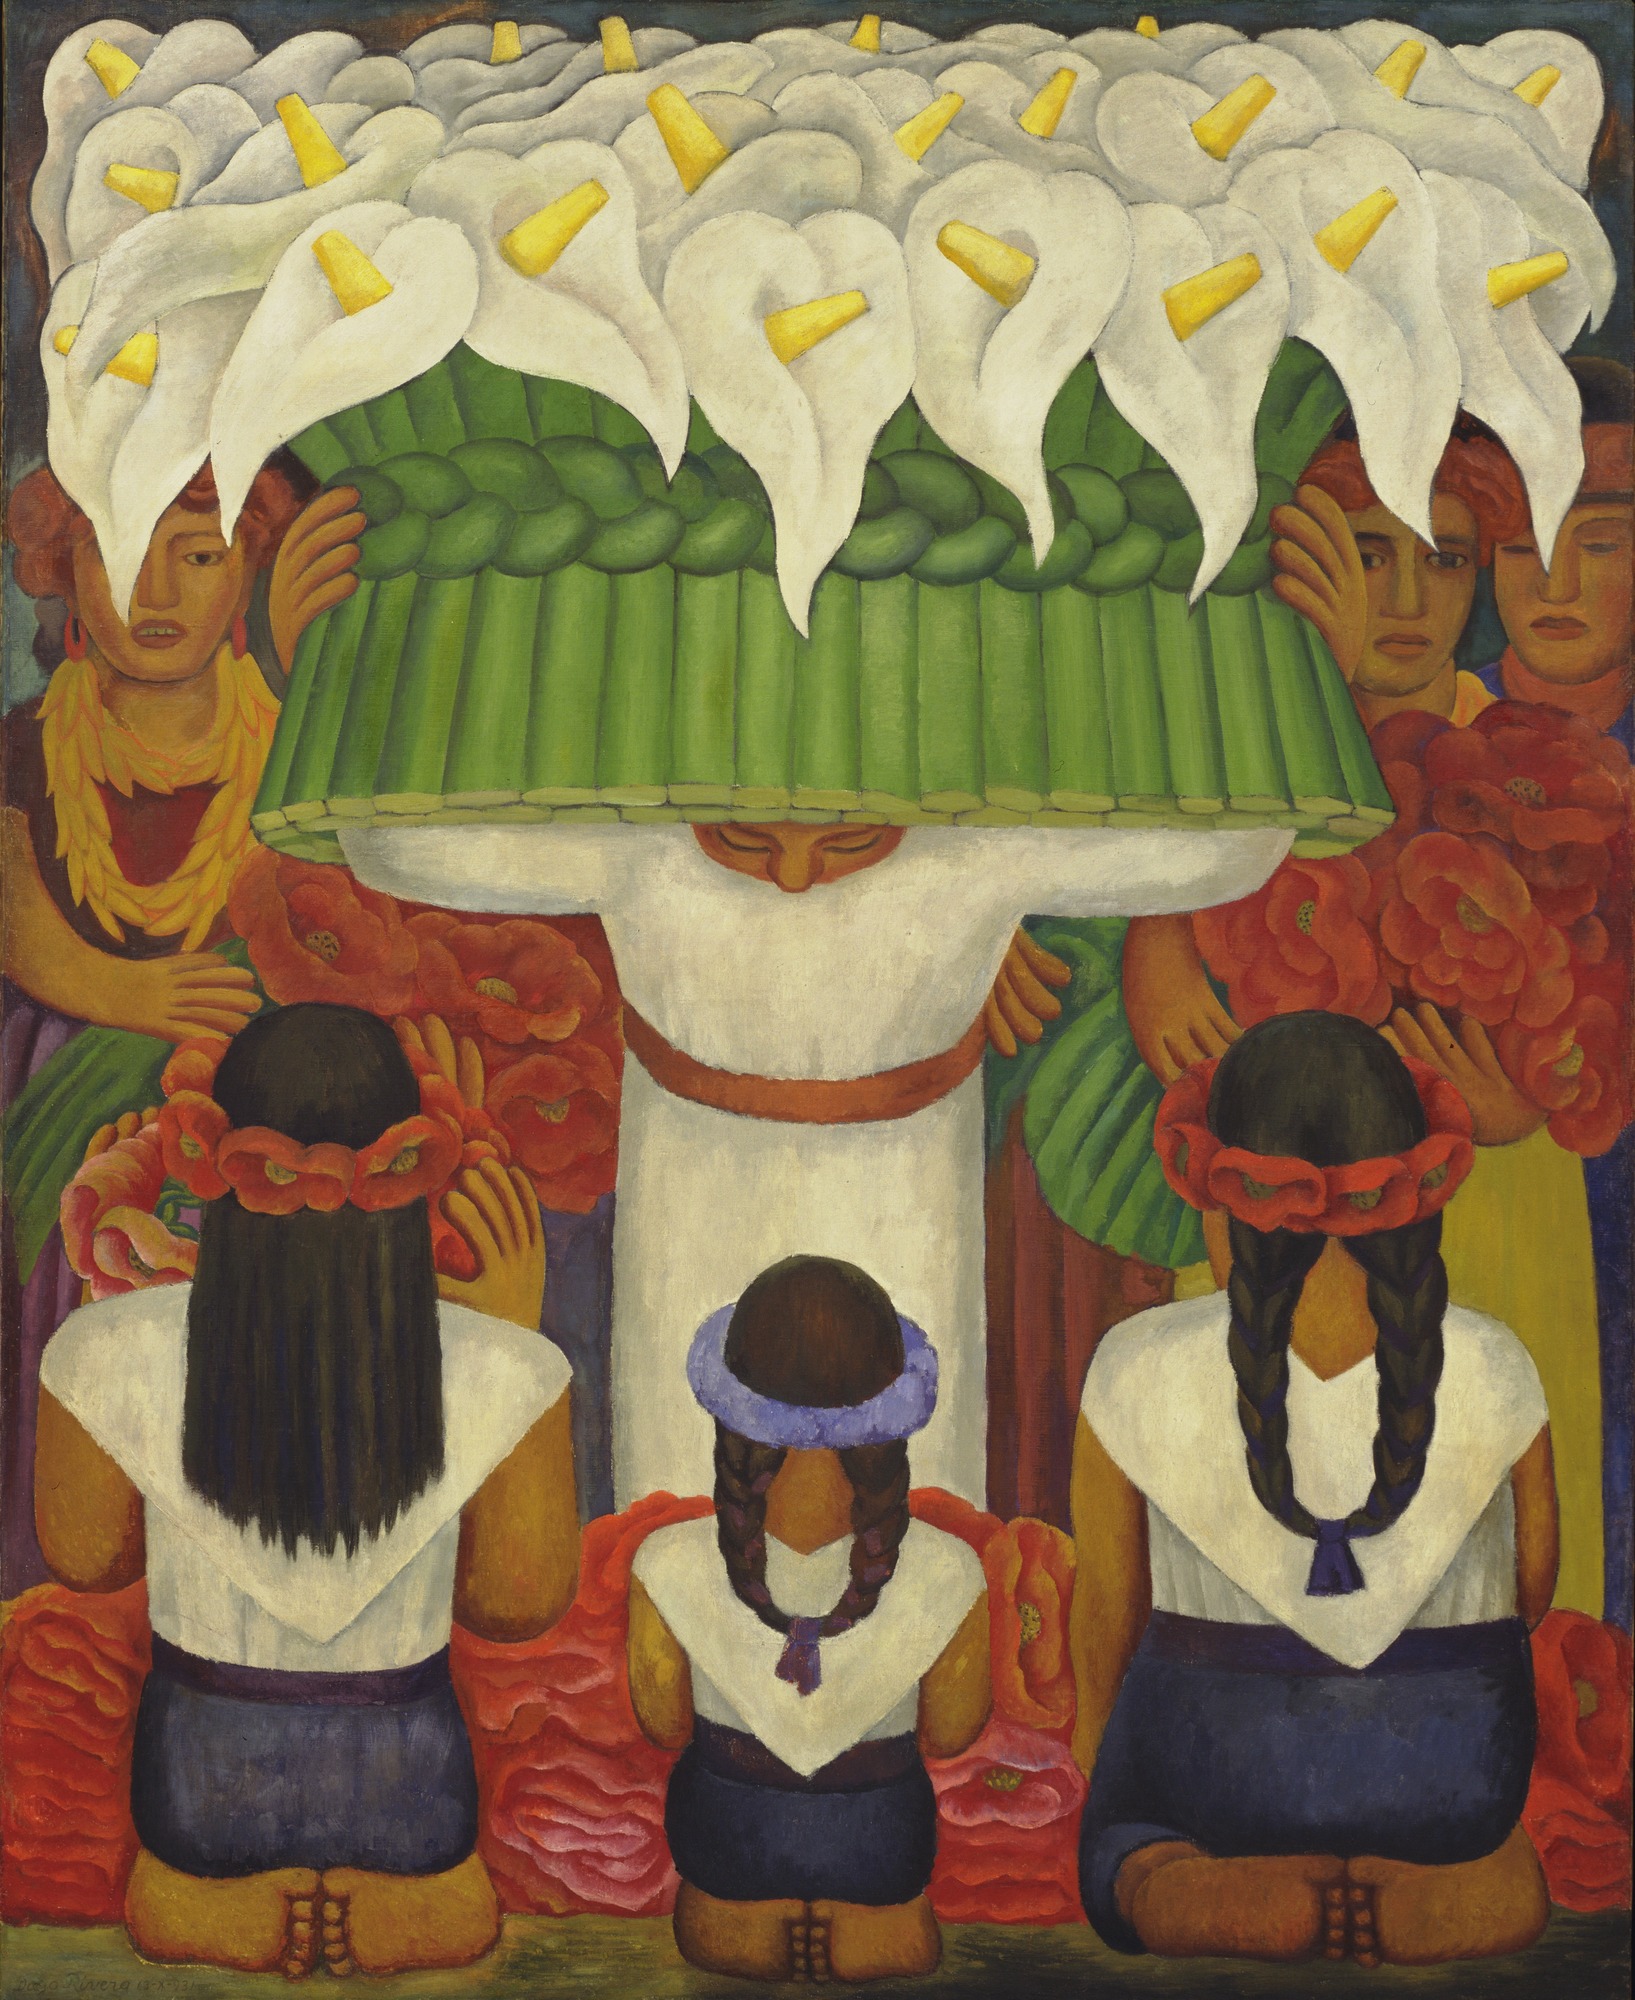 Das Blumenfest von Santa Anita by Diego Rivera - 1931 - 199,3 x 162,5 cm Museum of Modern Art